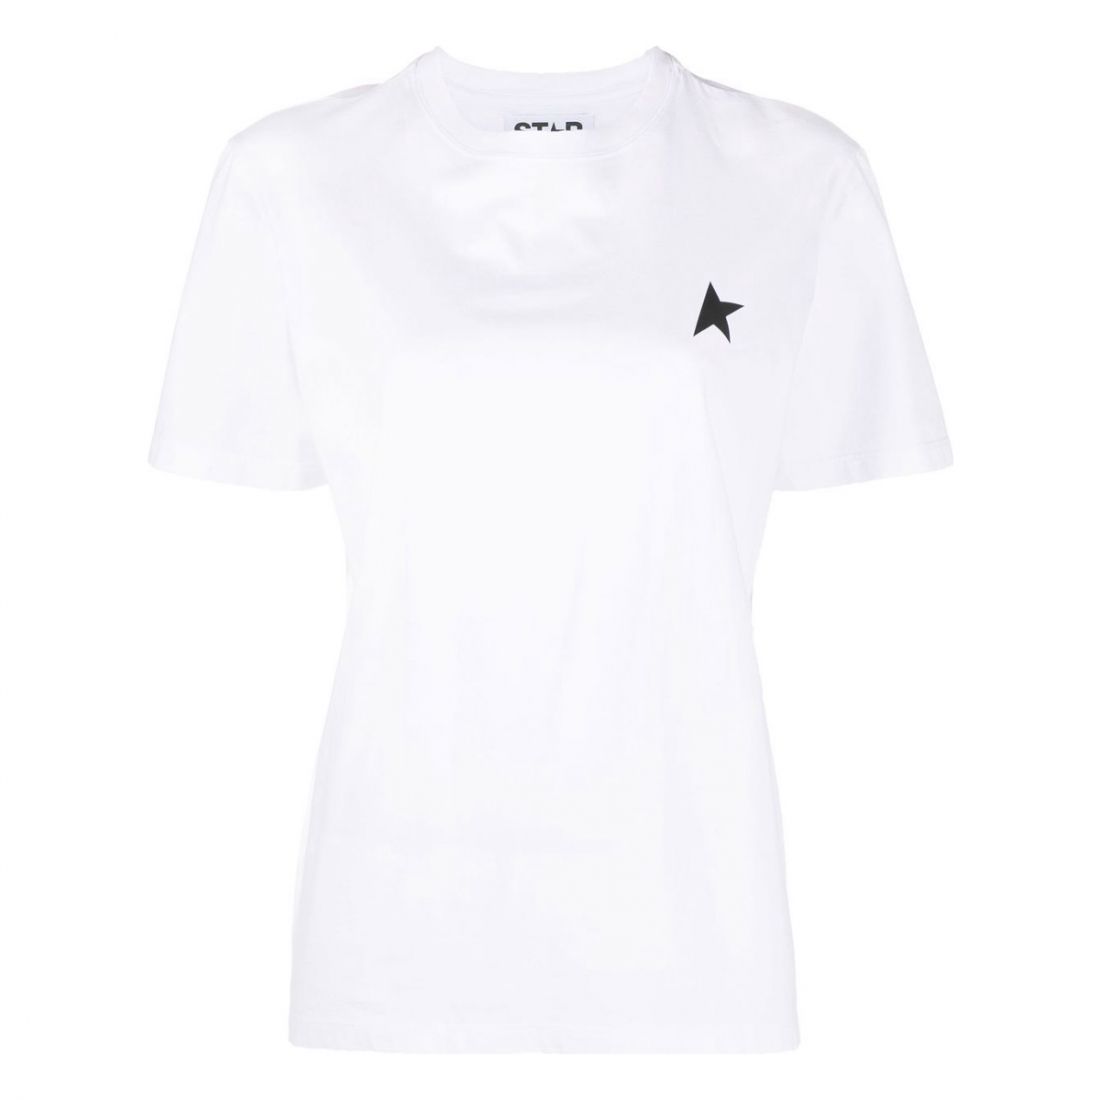 Golden Goose Deluxe Brand - T-shirt 'Logo' pour Femmes